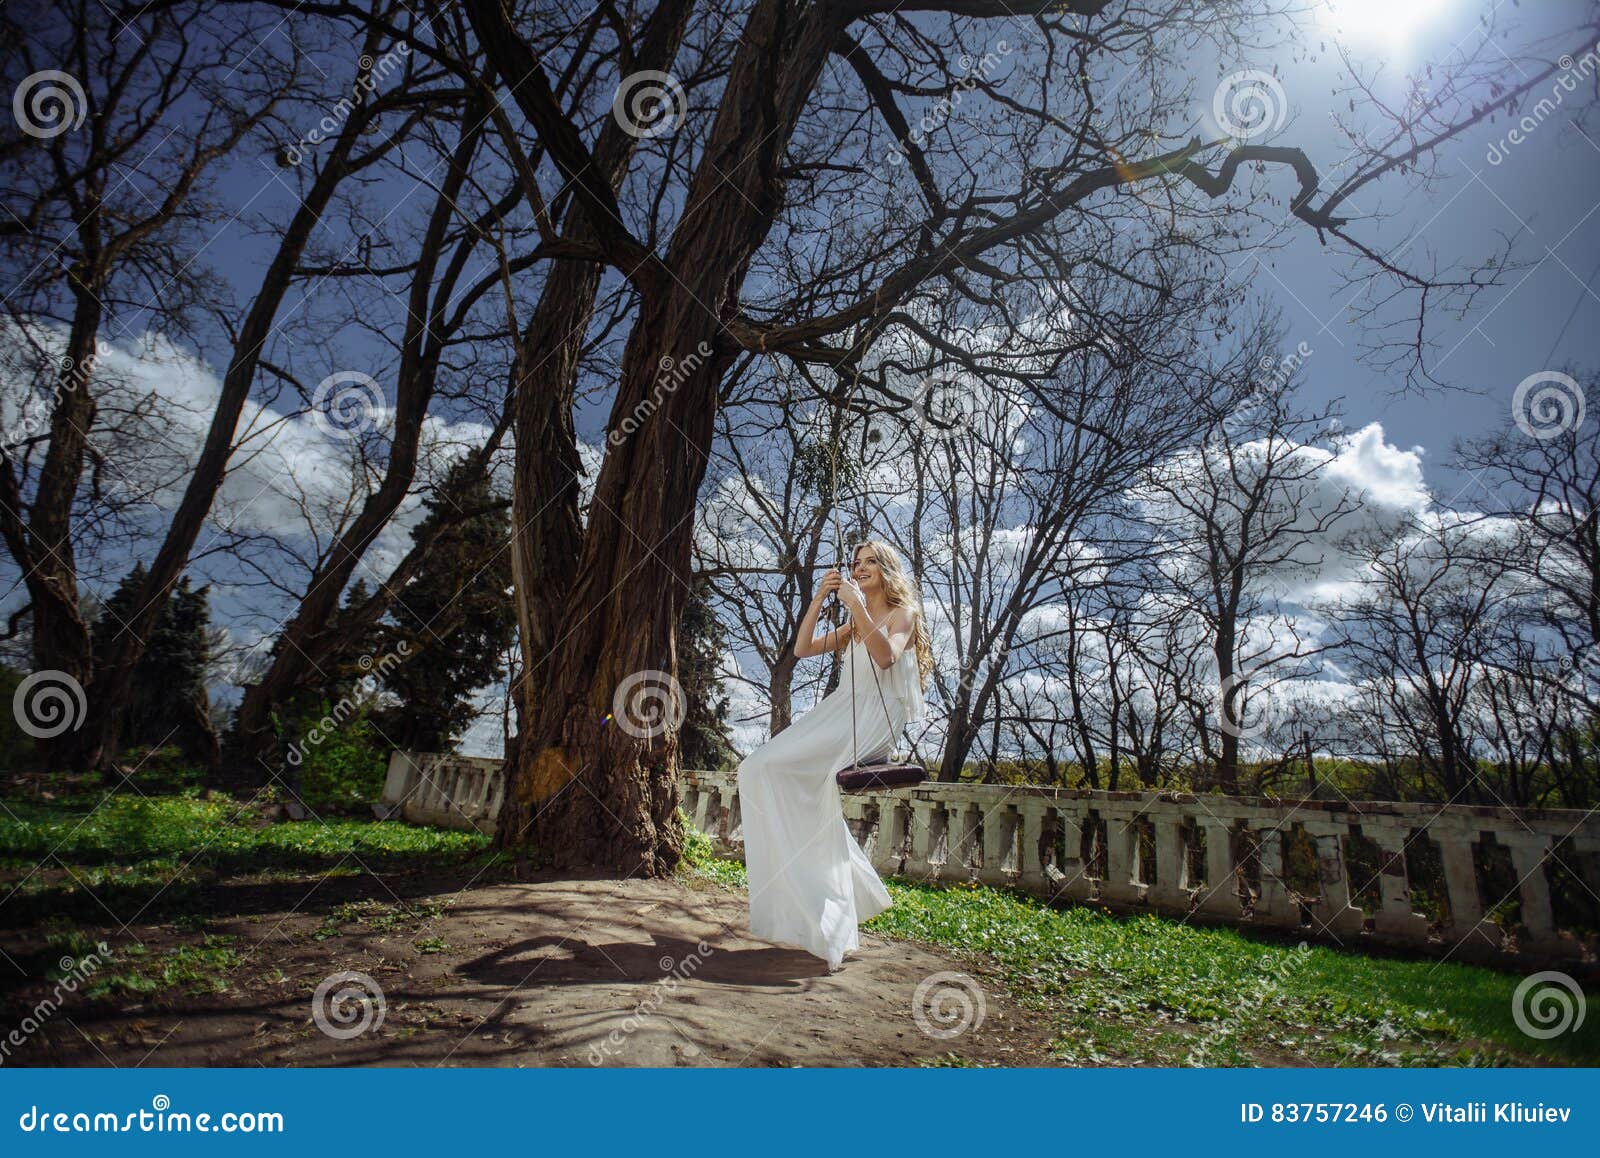 Utomhus- sommarstående av den unga nätta gulliga flickan Den härliga kvinnan som poserar på sagagunga nära ärr, rockerar på den gamla bron Fröcken i vit långt från stenräcket Fotoet har en modell färg